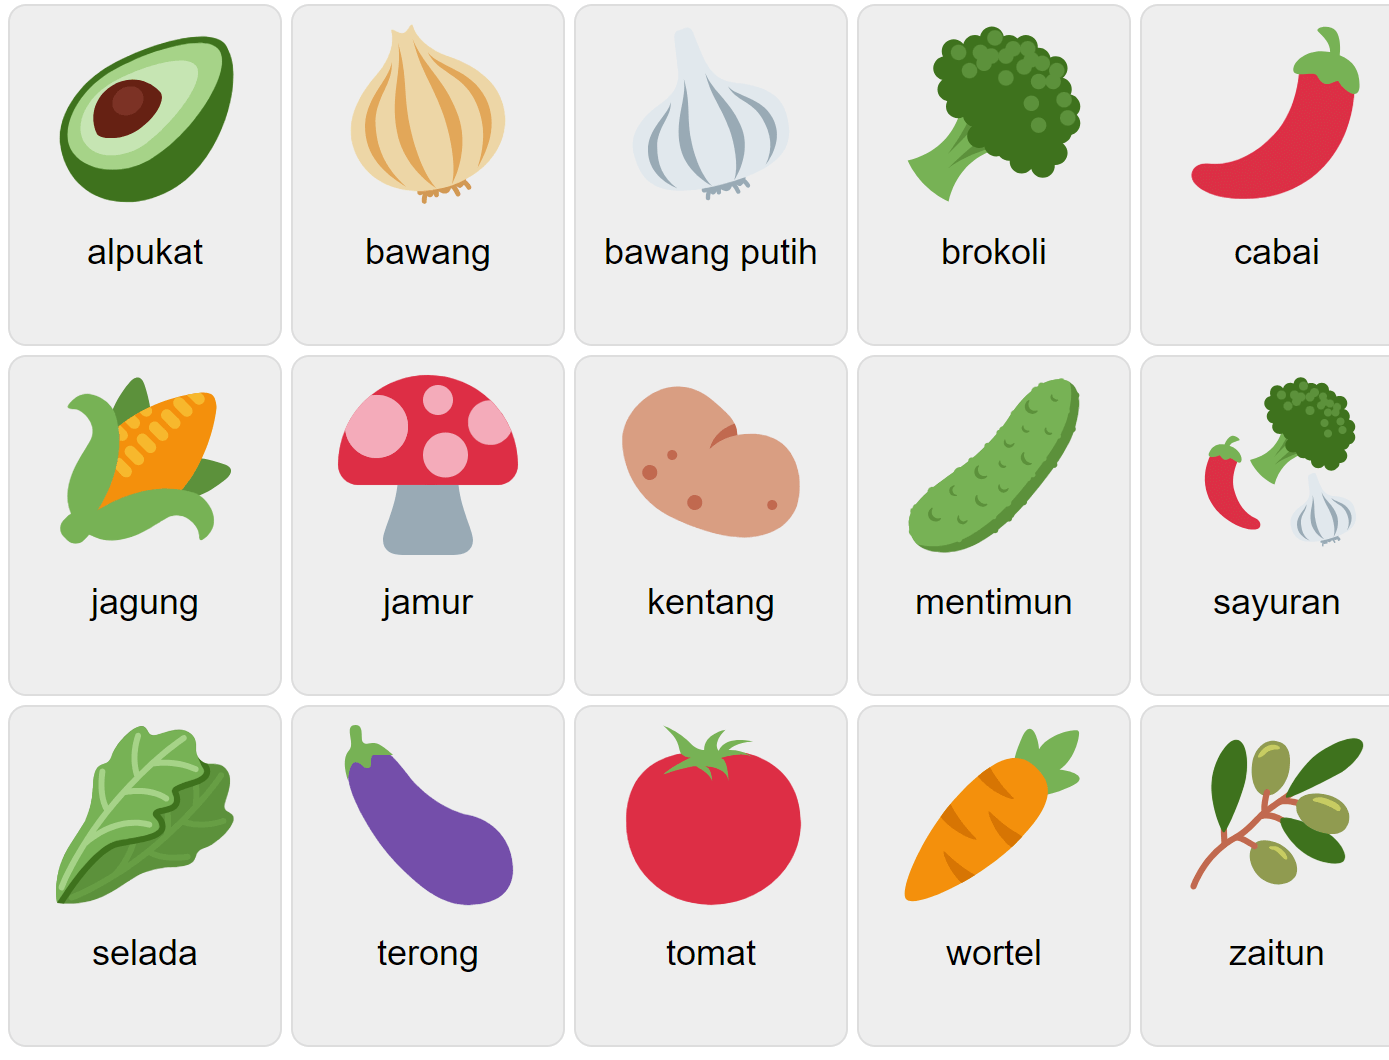 Grönsaker på indonesiska